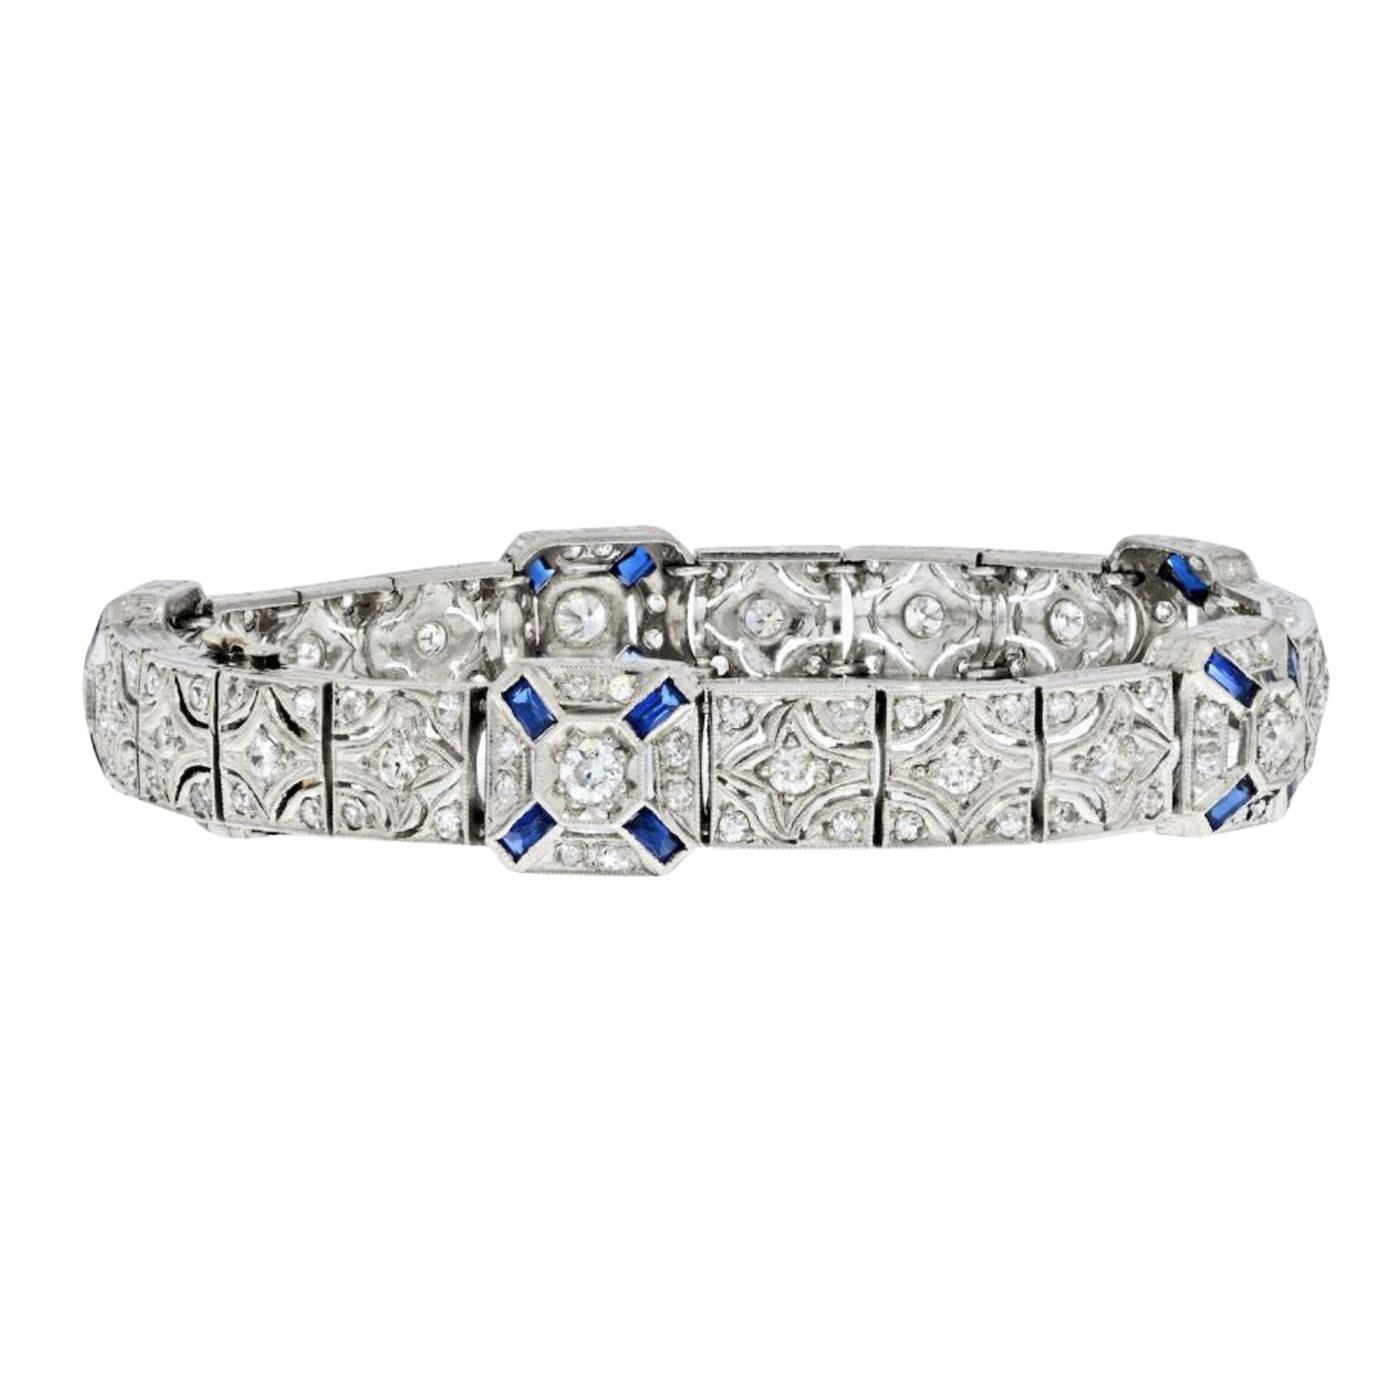 Emerald-Cut Diamond Platinum Line Bracelet, 5.92 Carats